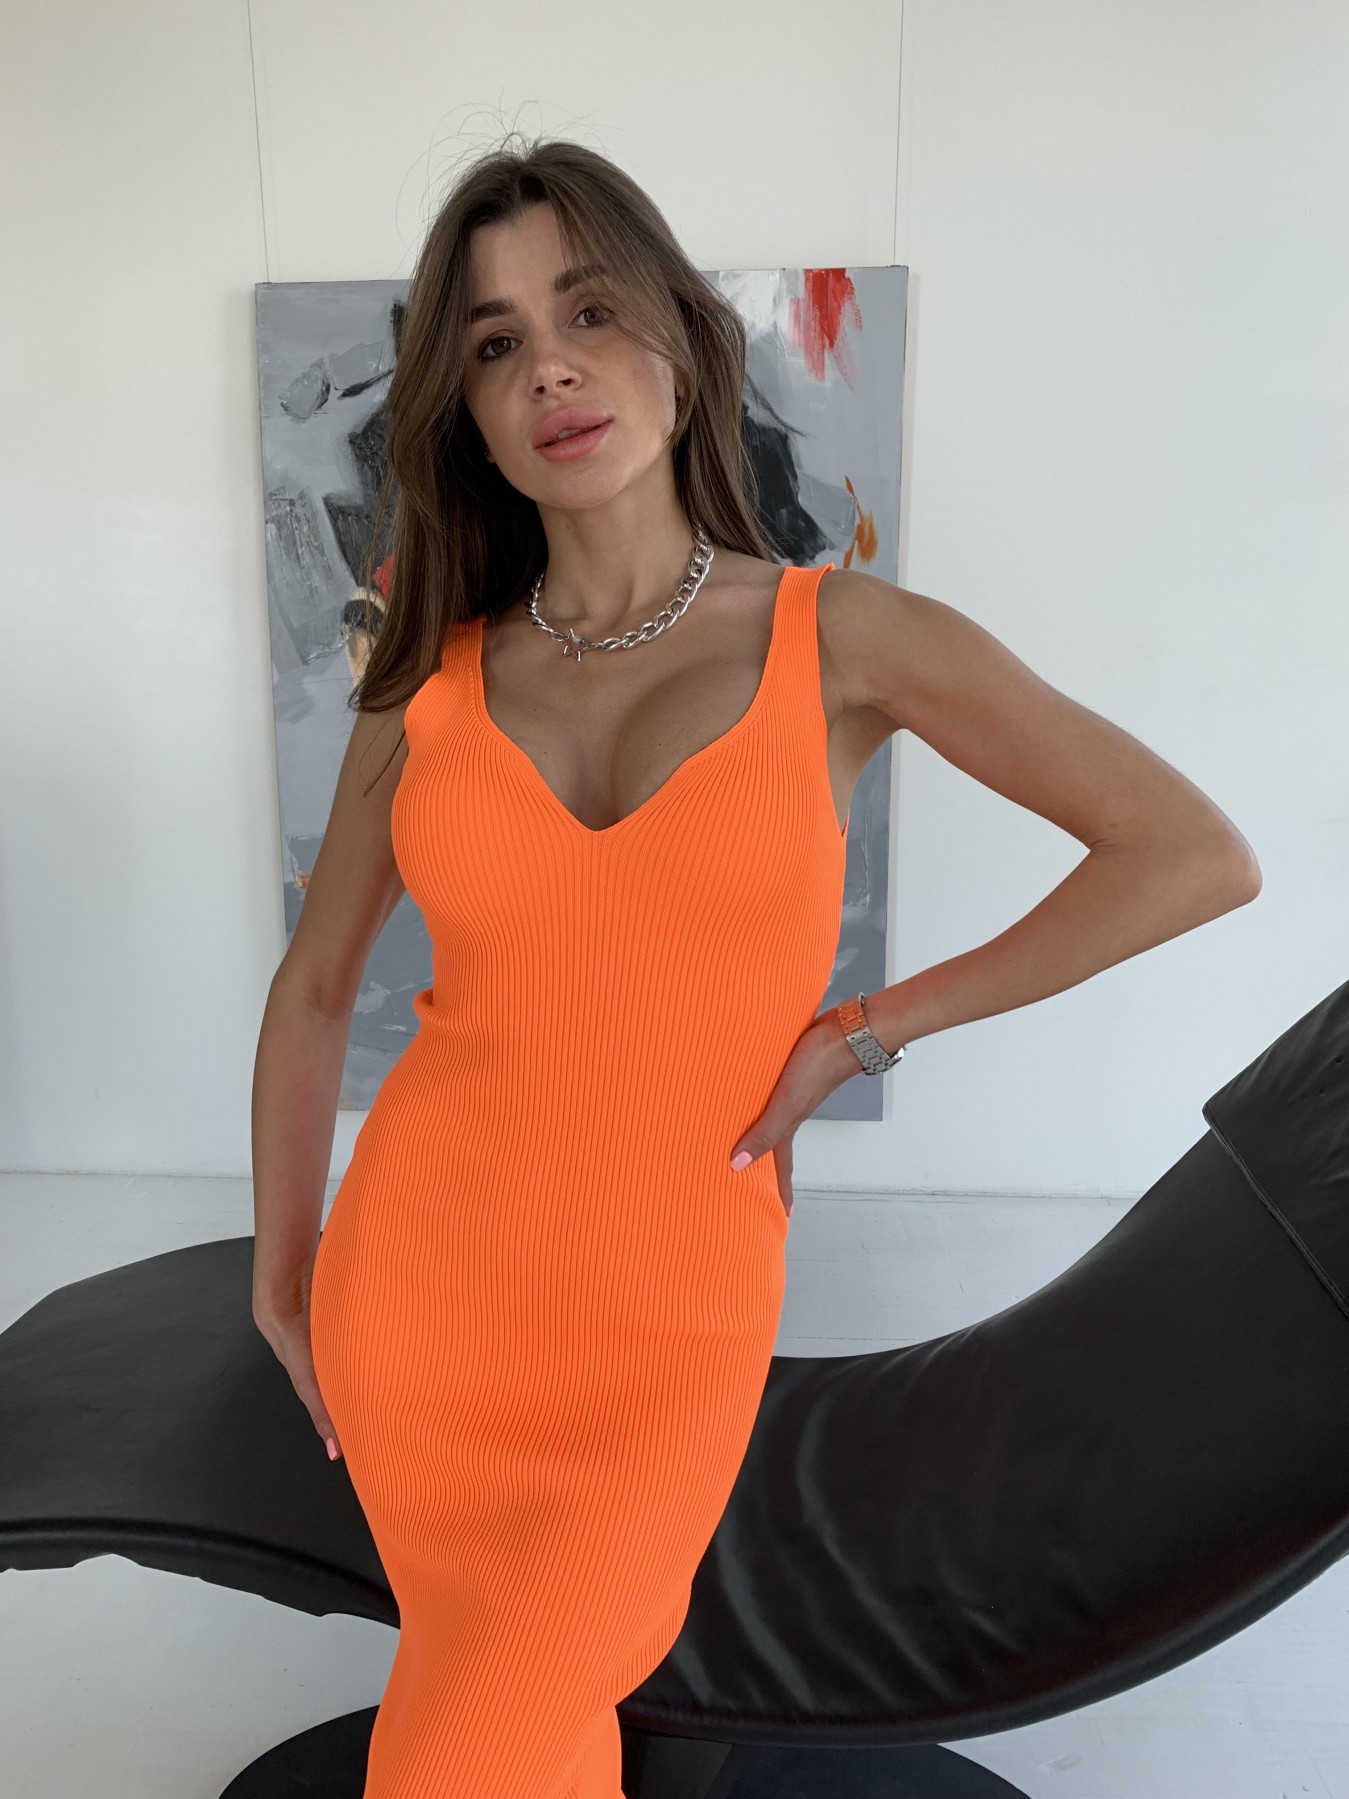 Платье 91798 АРТ. 48059 Цвет: Оранжевый - фото 2, интернет магазин tm-modus.ru